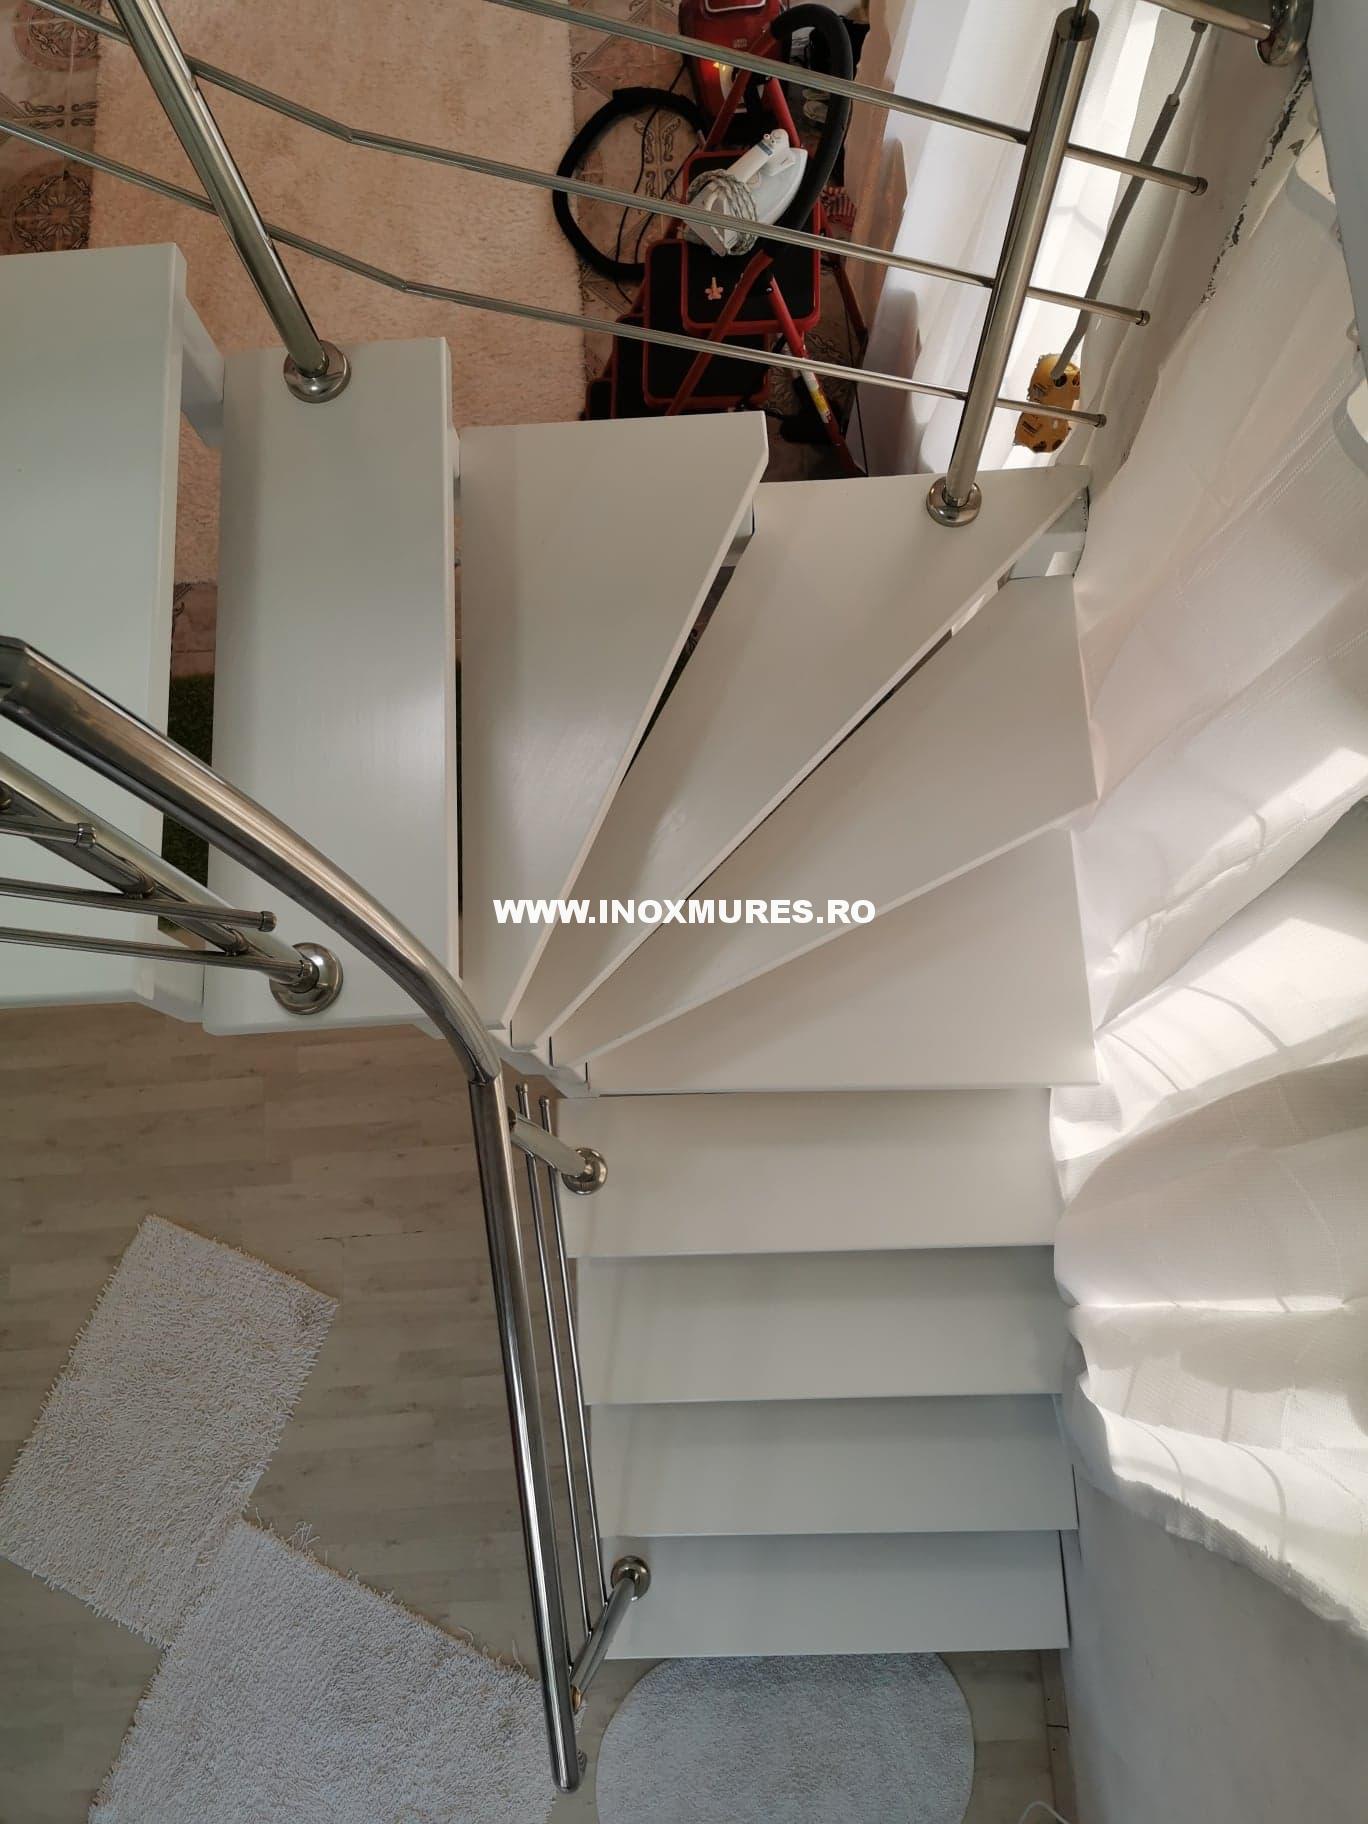 Scara interioara si balustrada inox Reghin 11.09.2019